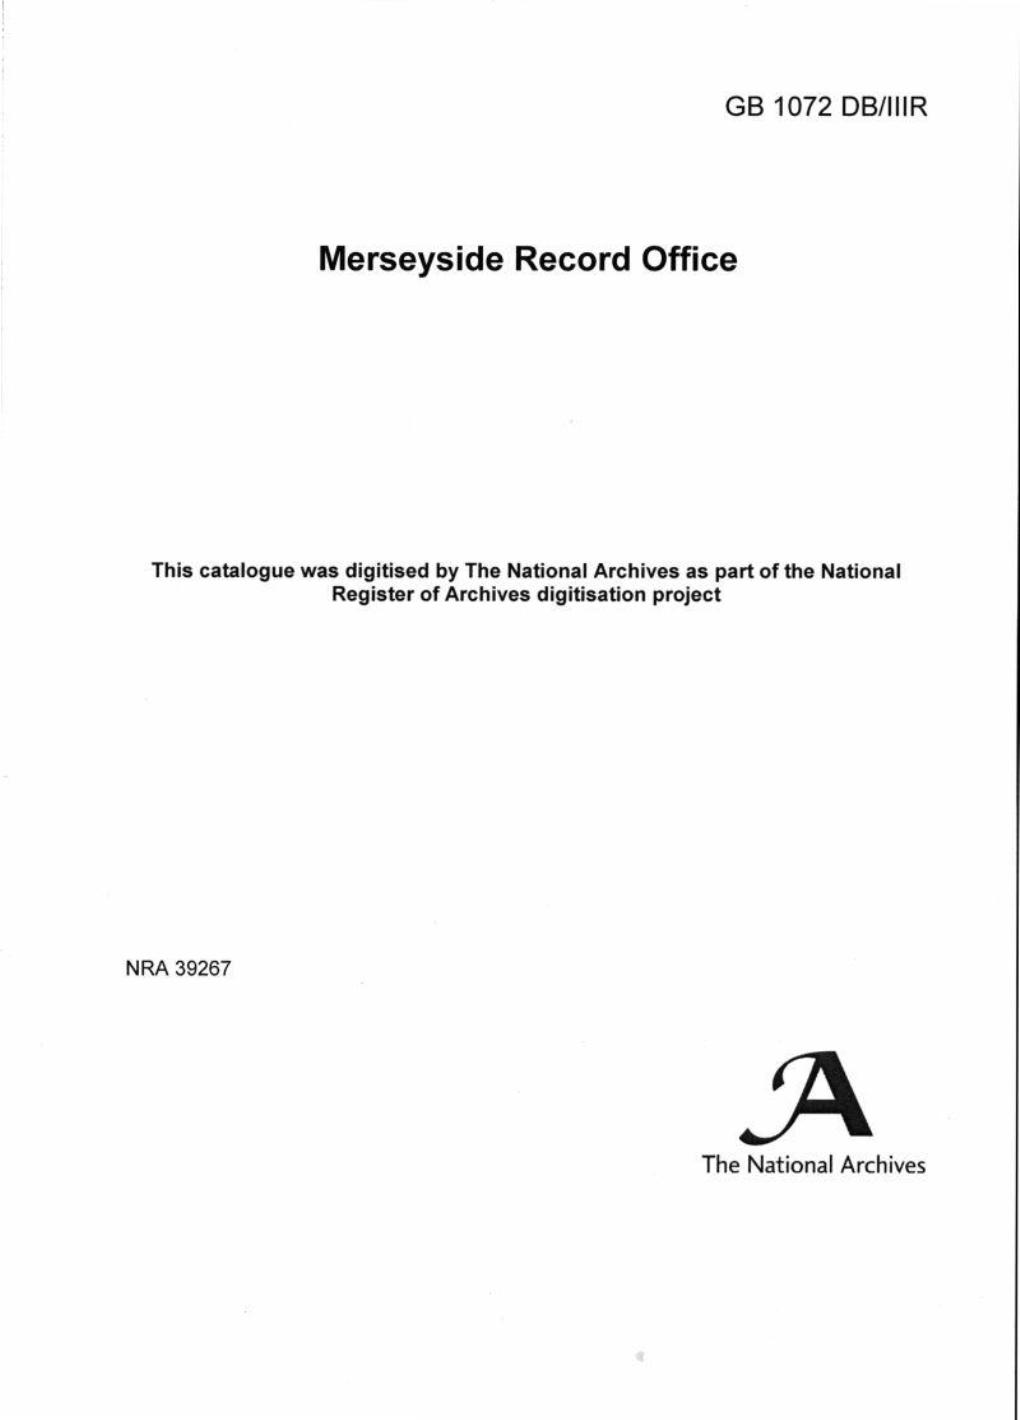 Merseyside Record Office